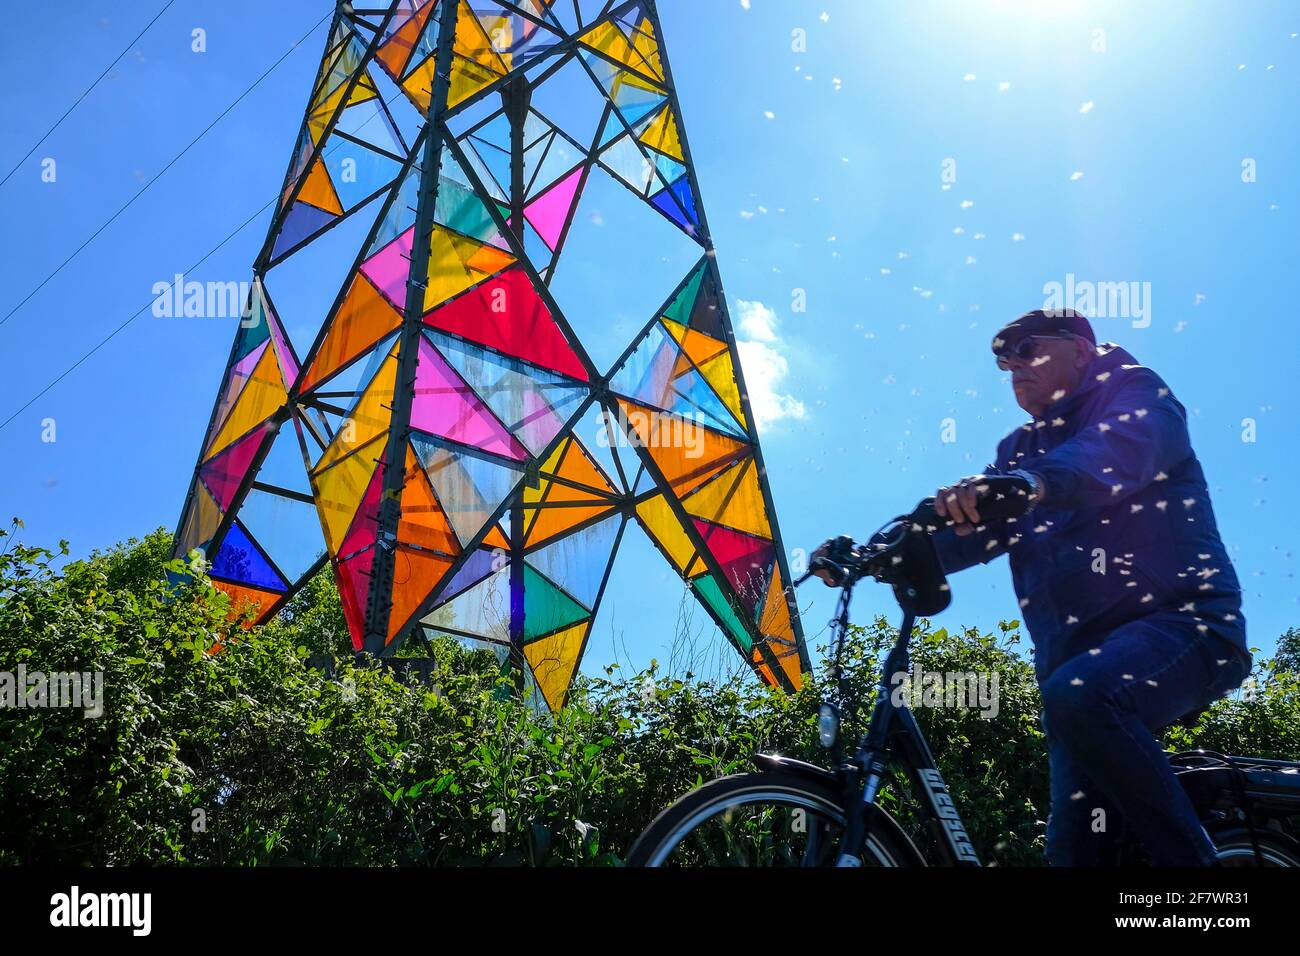 14.05.2020, Essen, Ruhrgebiet, Nordrhein-Westfalen, Deutschland - Ein aelterer Fahrradfahrer faehrt durch einen Insektenschwarm auf einem Radweg an de Stock Photo